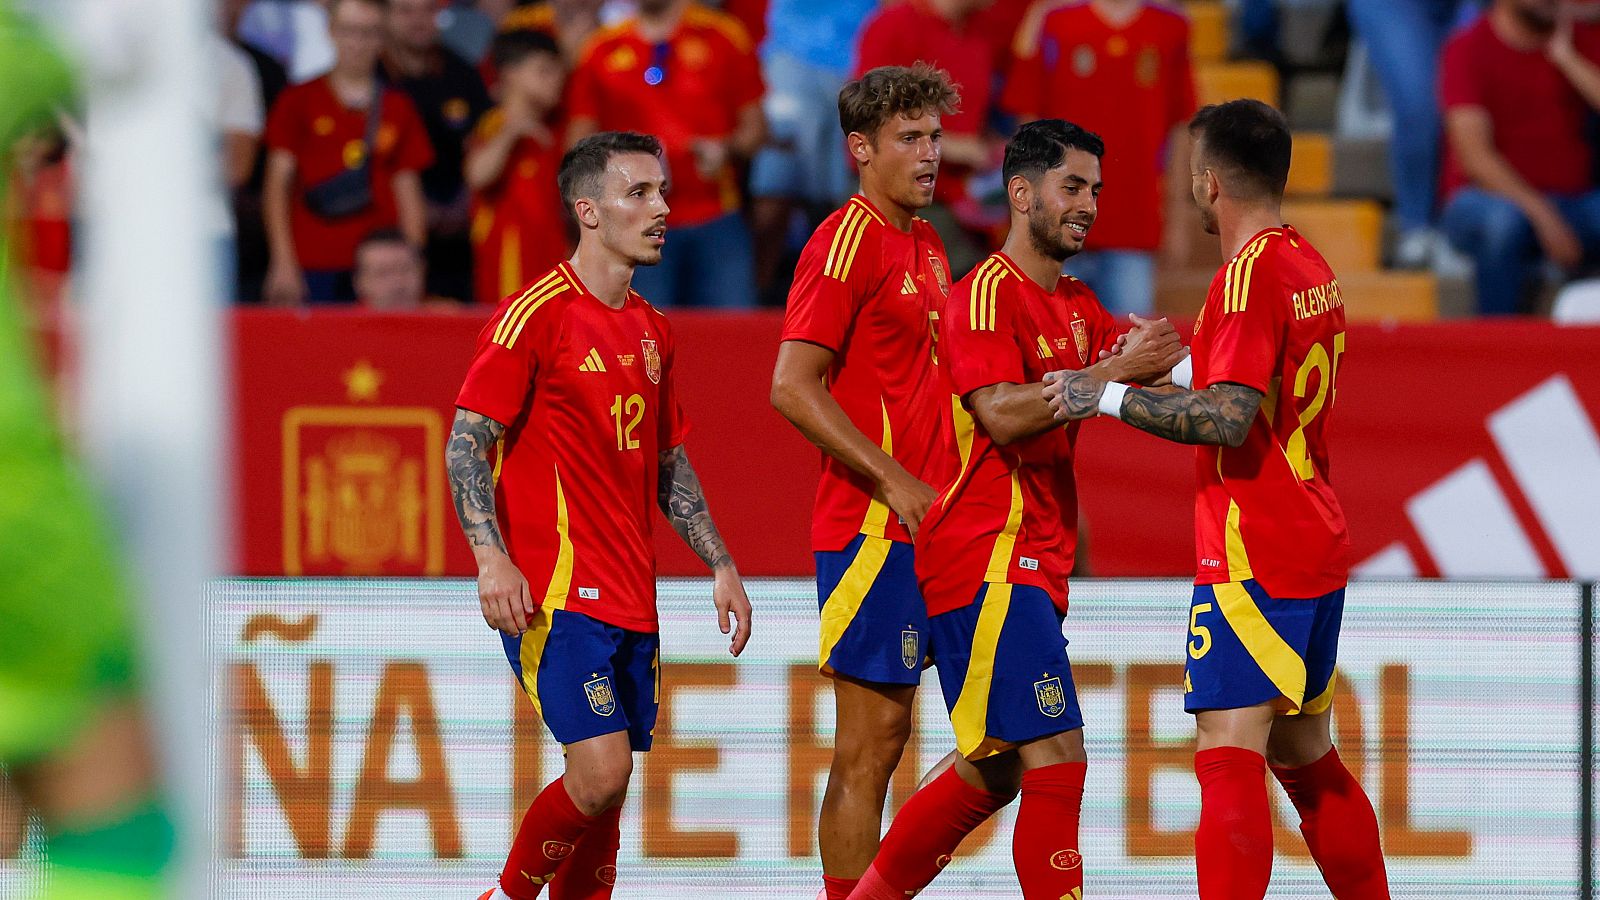 Ayoze debuta y marca el primer gol de España ante Andorra